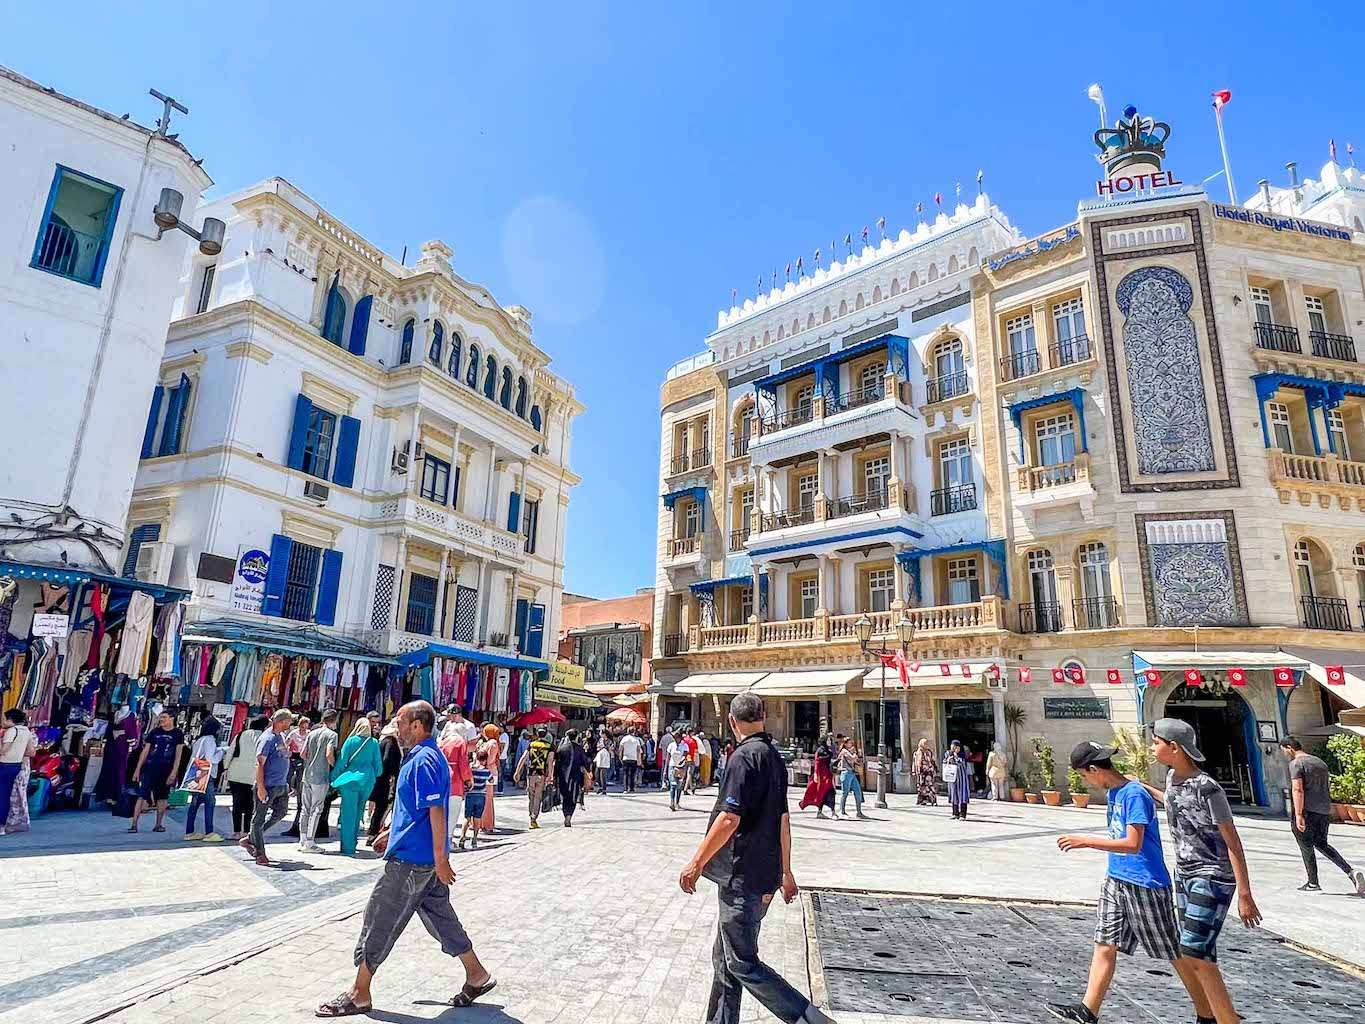 Tunis, capitala Tunisiei din Africa puzzle online